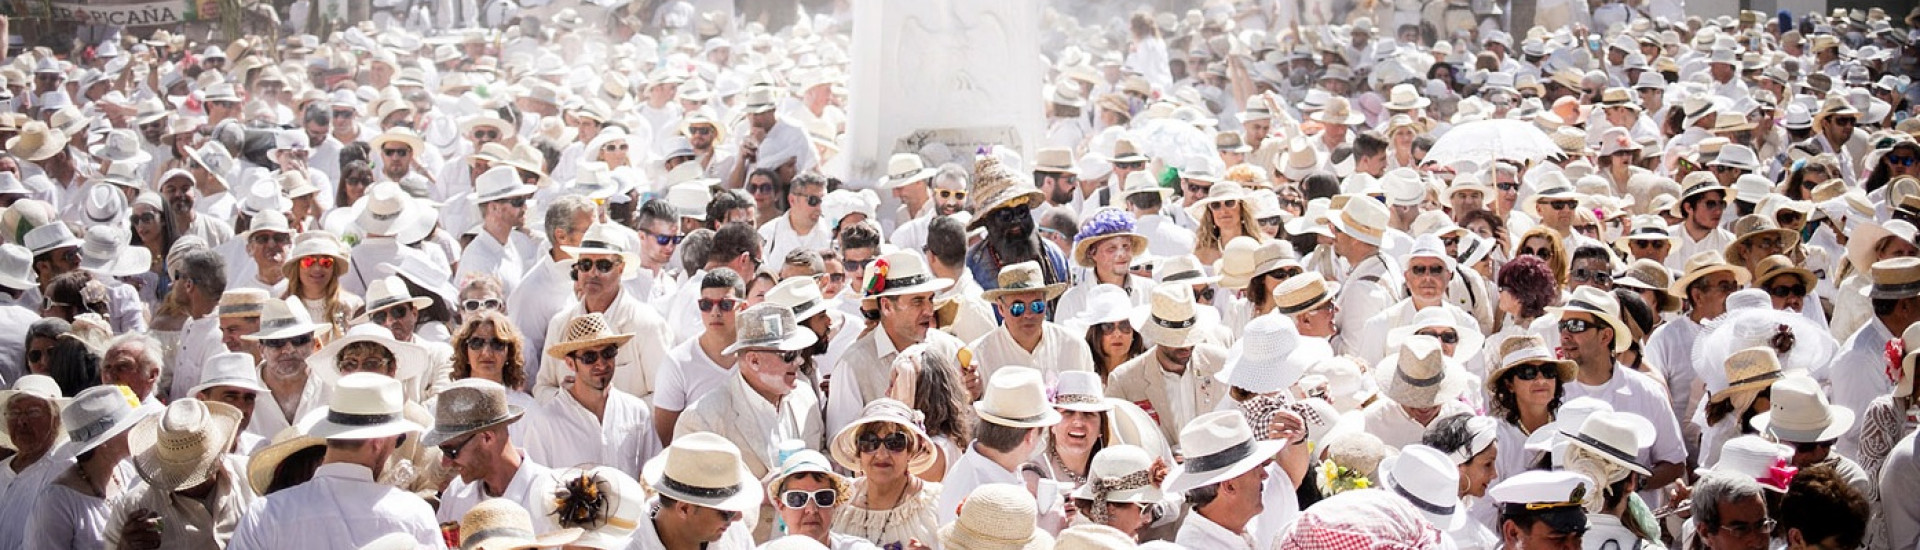 Fiestas tradicionales y más populares en las Islas Canarias